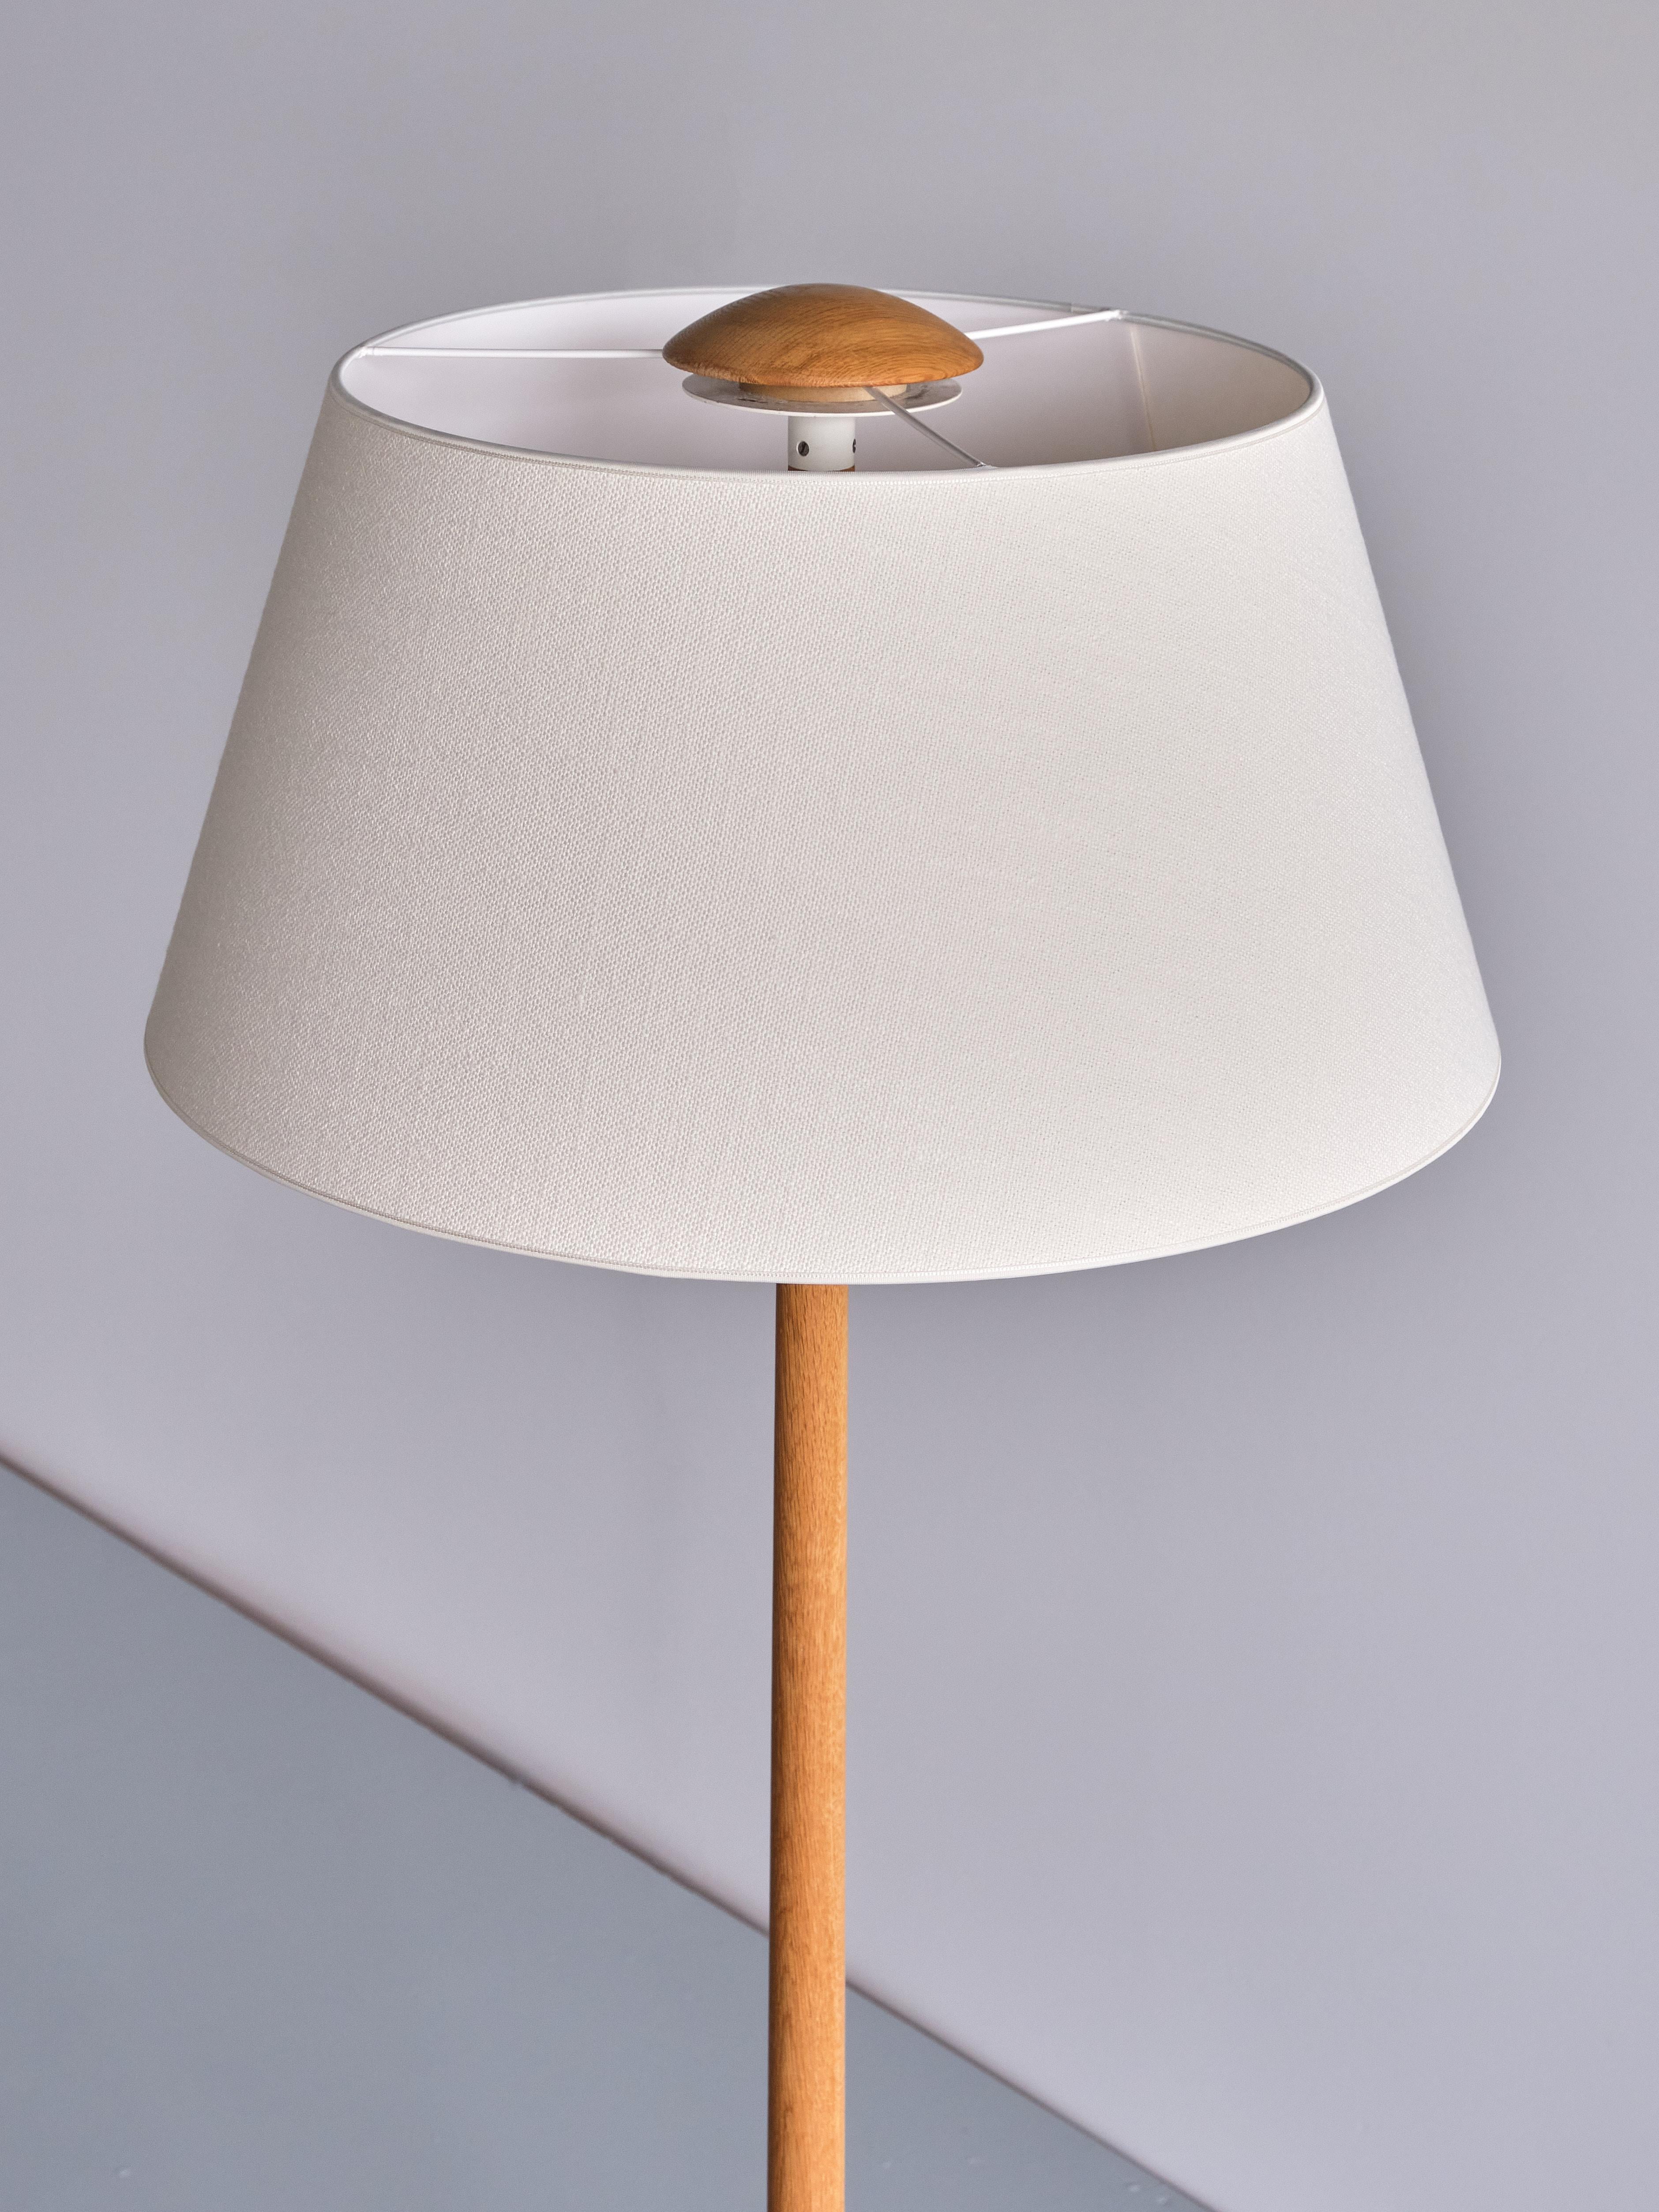 Swedish Modern Three Legged Floor Lamp in Oak, Svensk Hemslöjd, 1950s For Sale 5